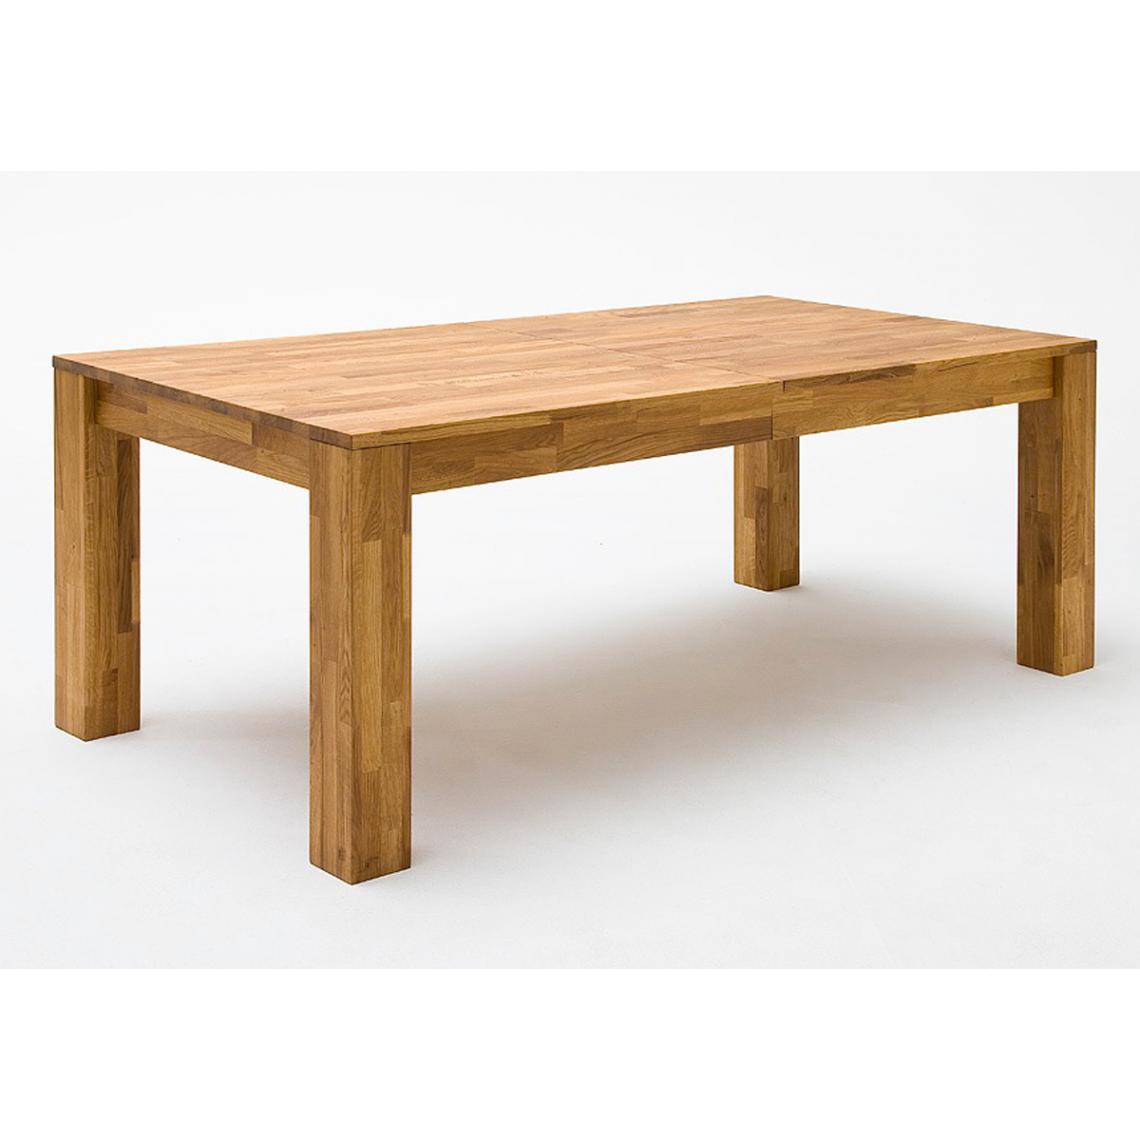 Pegane - Table à manger en chêne sauvage massif huilé - Longueur 140/180/220 x Hauteur 77 x Profondeur 80 cm - Tables à manger